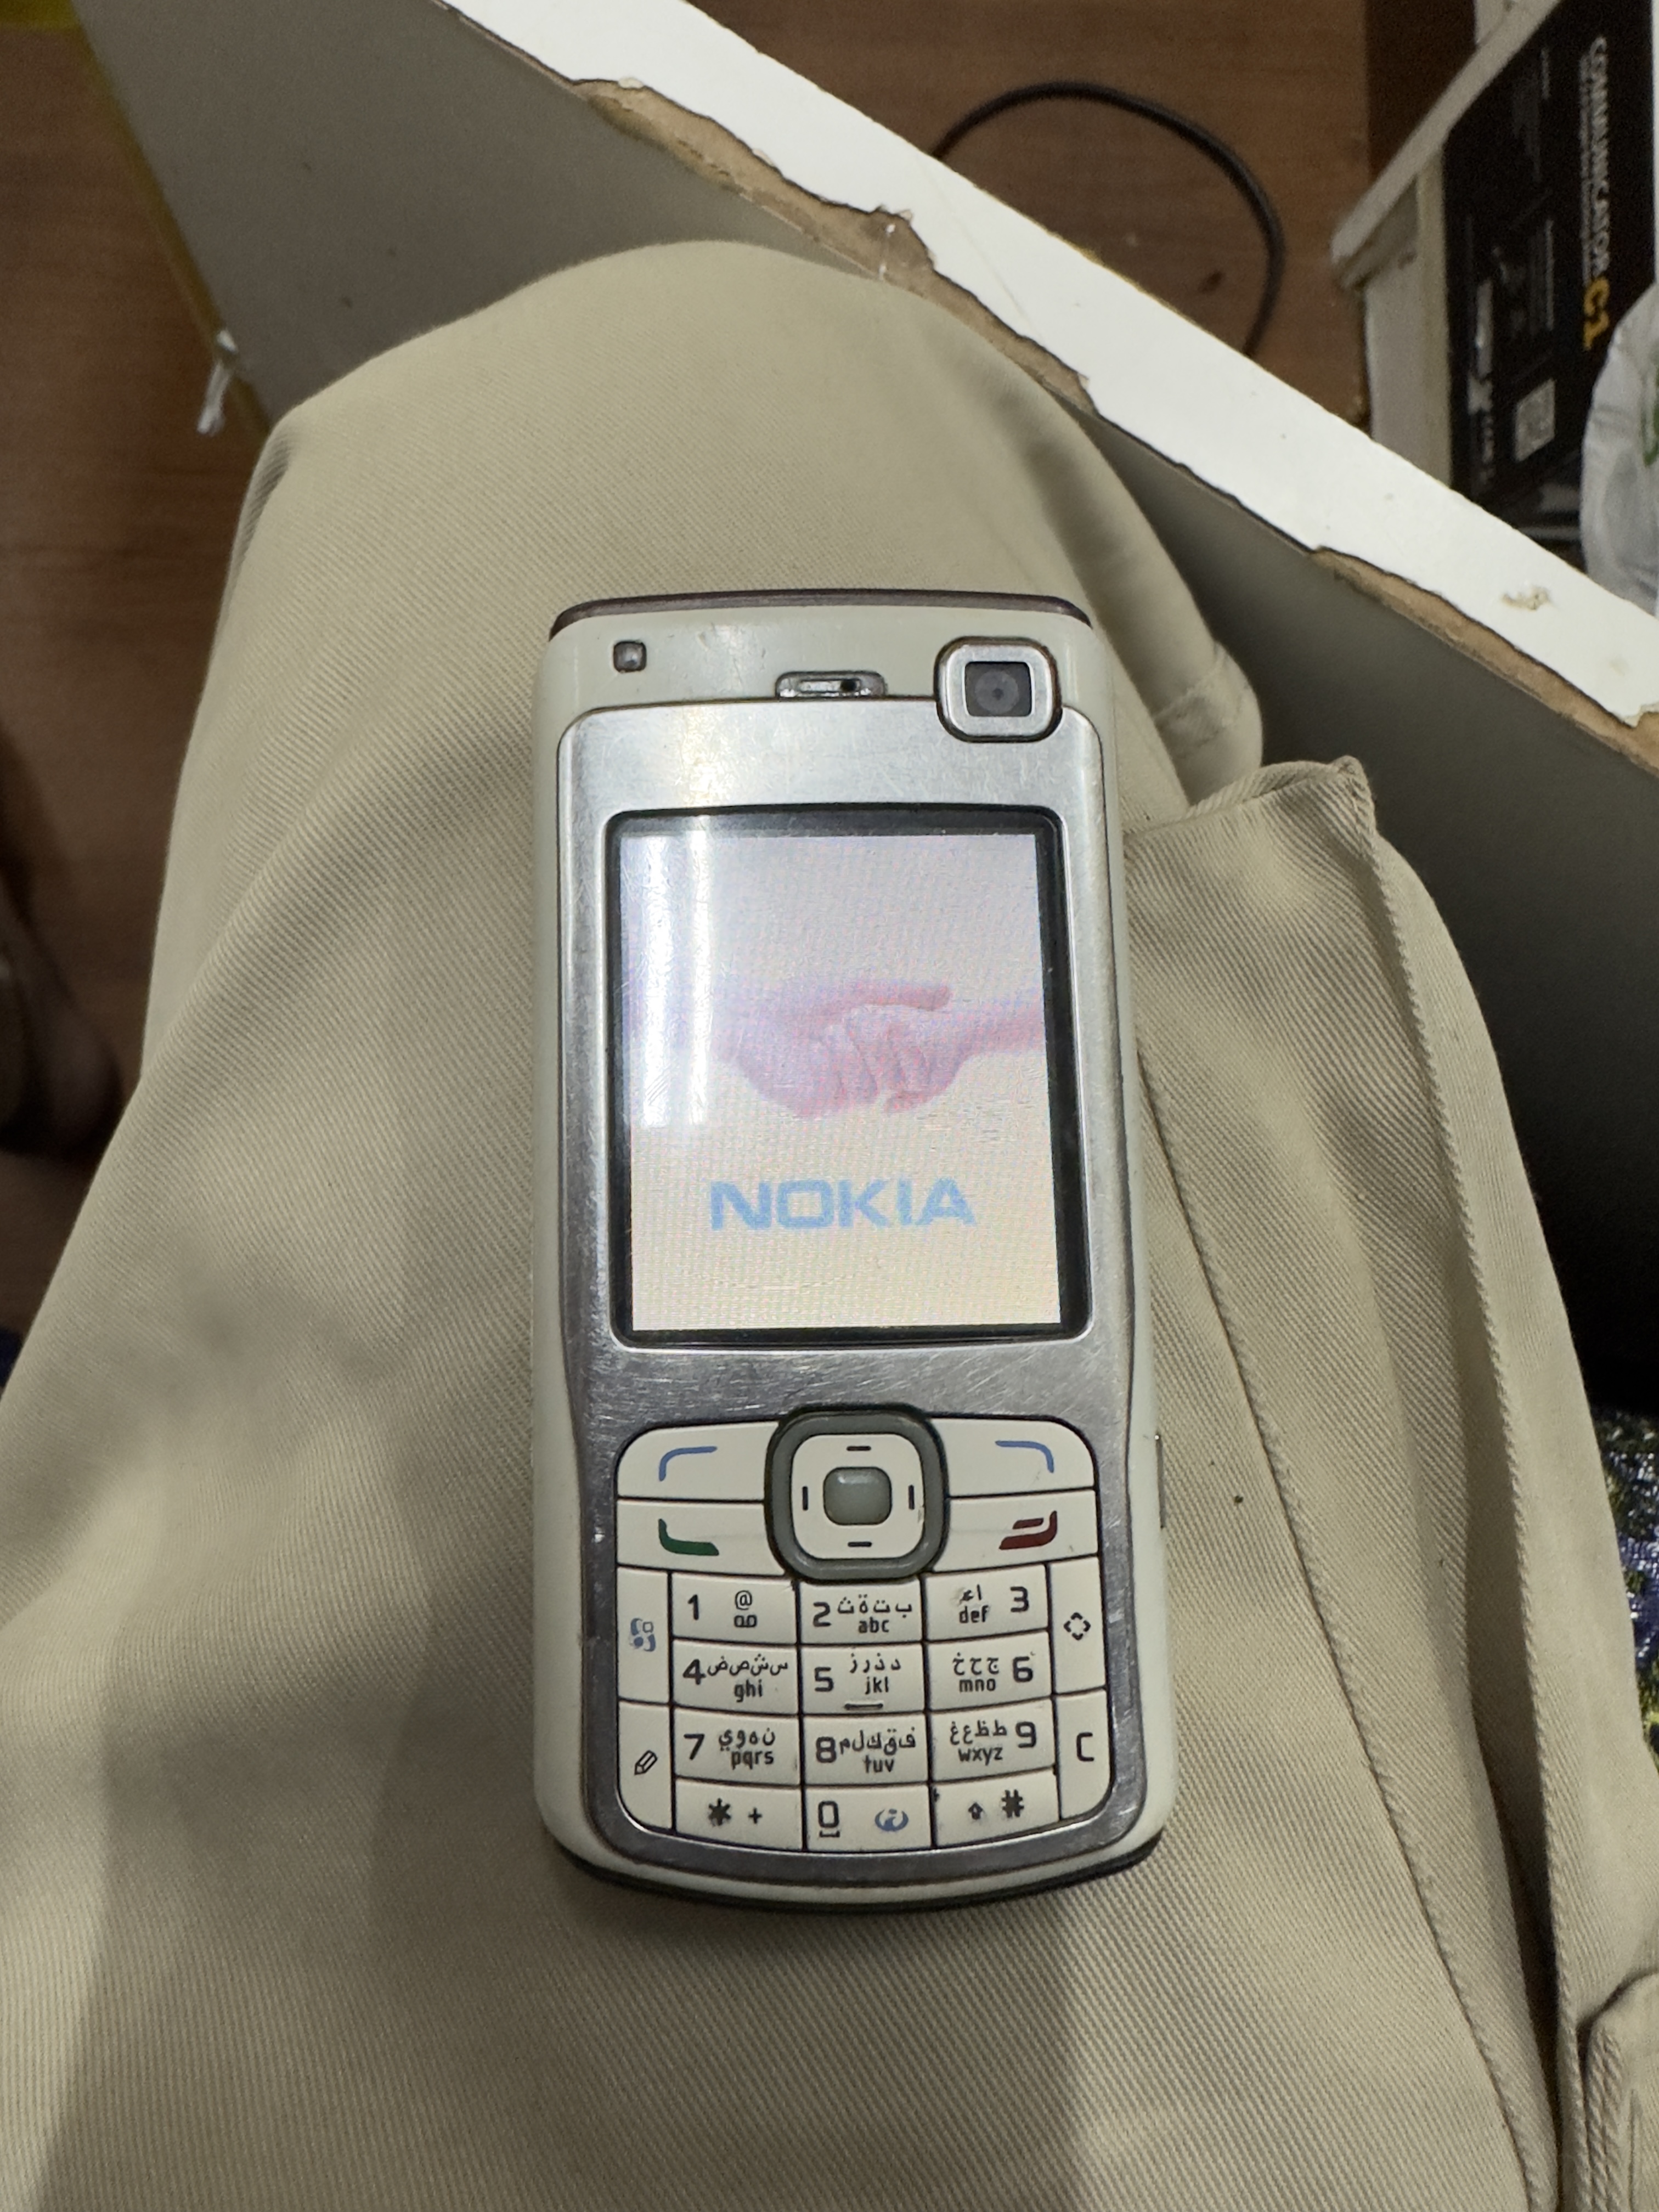 Nokia N70 old